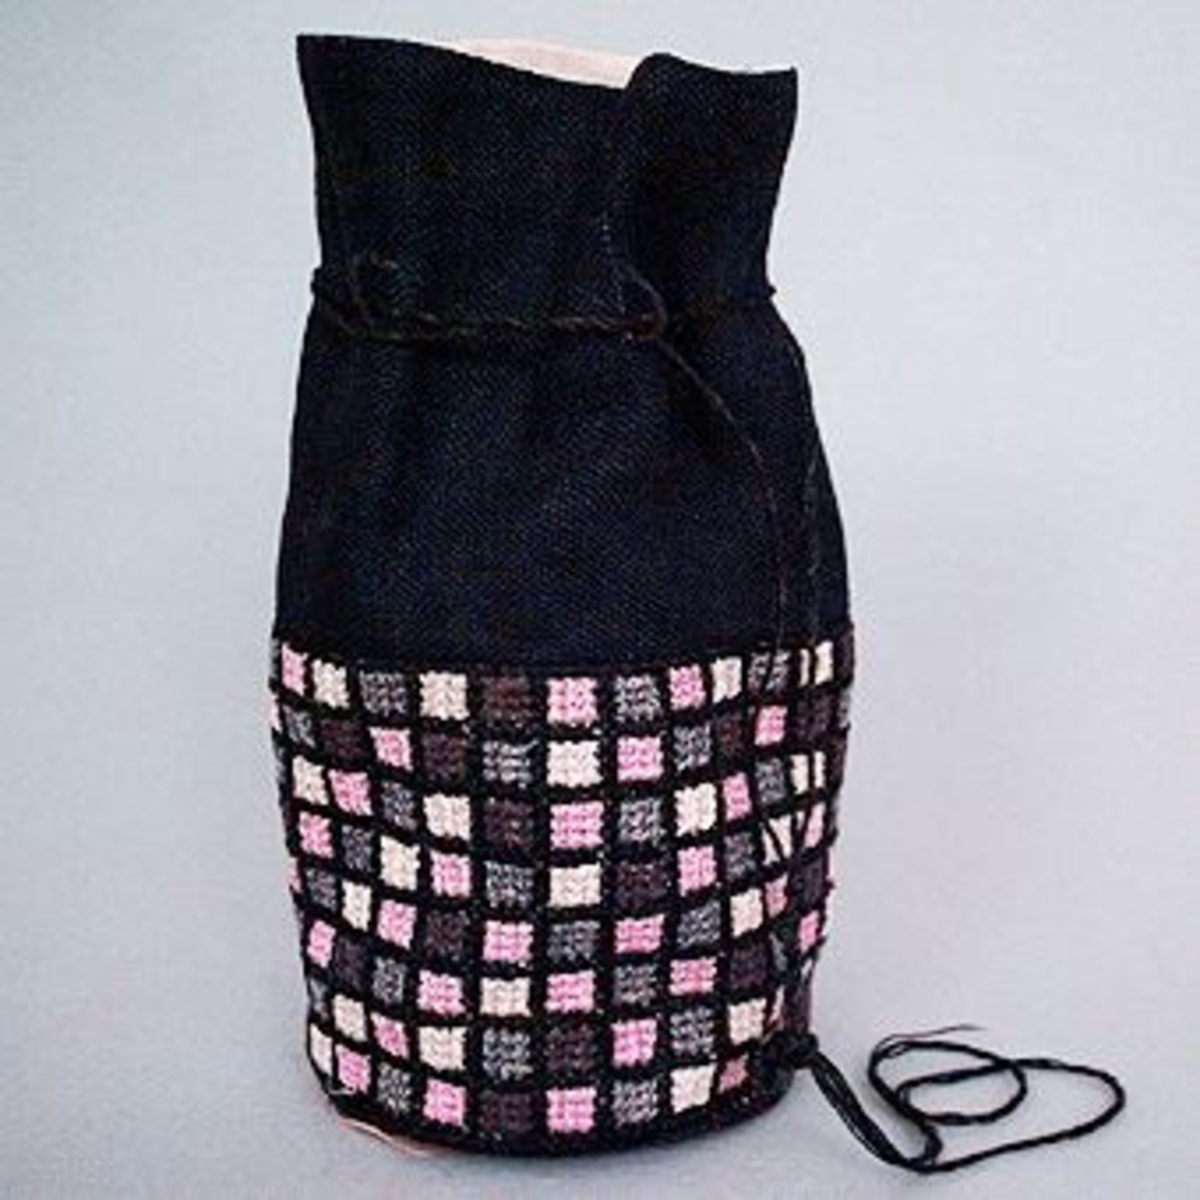 Liten väska med nederdelen broderad i rutmönster med rosa, grå, bruna och halvblekta rutor i tvistsöm och överdelen i svart linnetyg.På etikett fastsatt i botten på väskan anges materialåtgång och prisuppgift, texten är svårläslig."Skollinne nr 1 35 x 15 cmSvart linne 30 x 15 cmVitt linne t foder 35 x 25 cm"Knox garn och Hålsömsgarn har använts"Knocks 1 docka rosa 556Knocks 1 docka grå 524Knocks 3 dockor svart 5911 1/2 docka grön?hålsömsg. nr 5?Pris 10 kr"."Modell får ej säljas".Väskan har SHR:s pappersetikett från Kronobergs Läns Hemslöjdsförening Växjö, med påskrivet nummer: "1409", fästad vid sig.